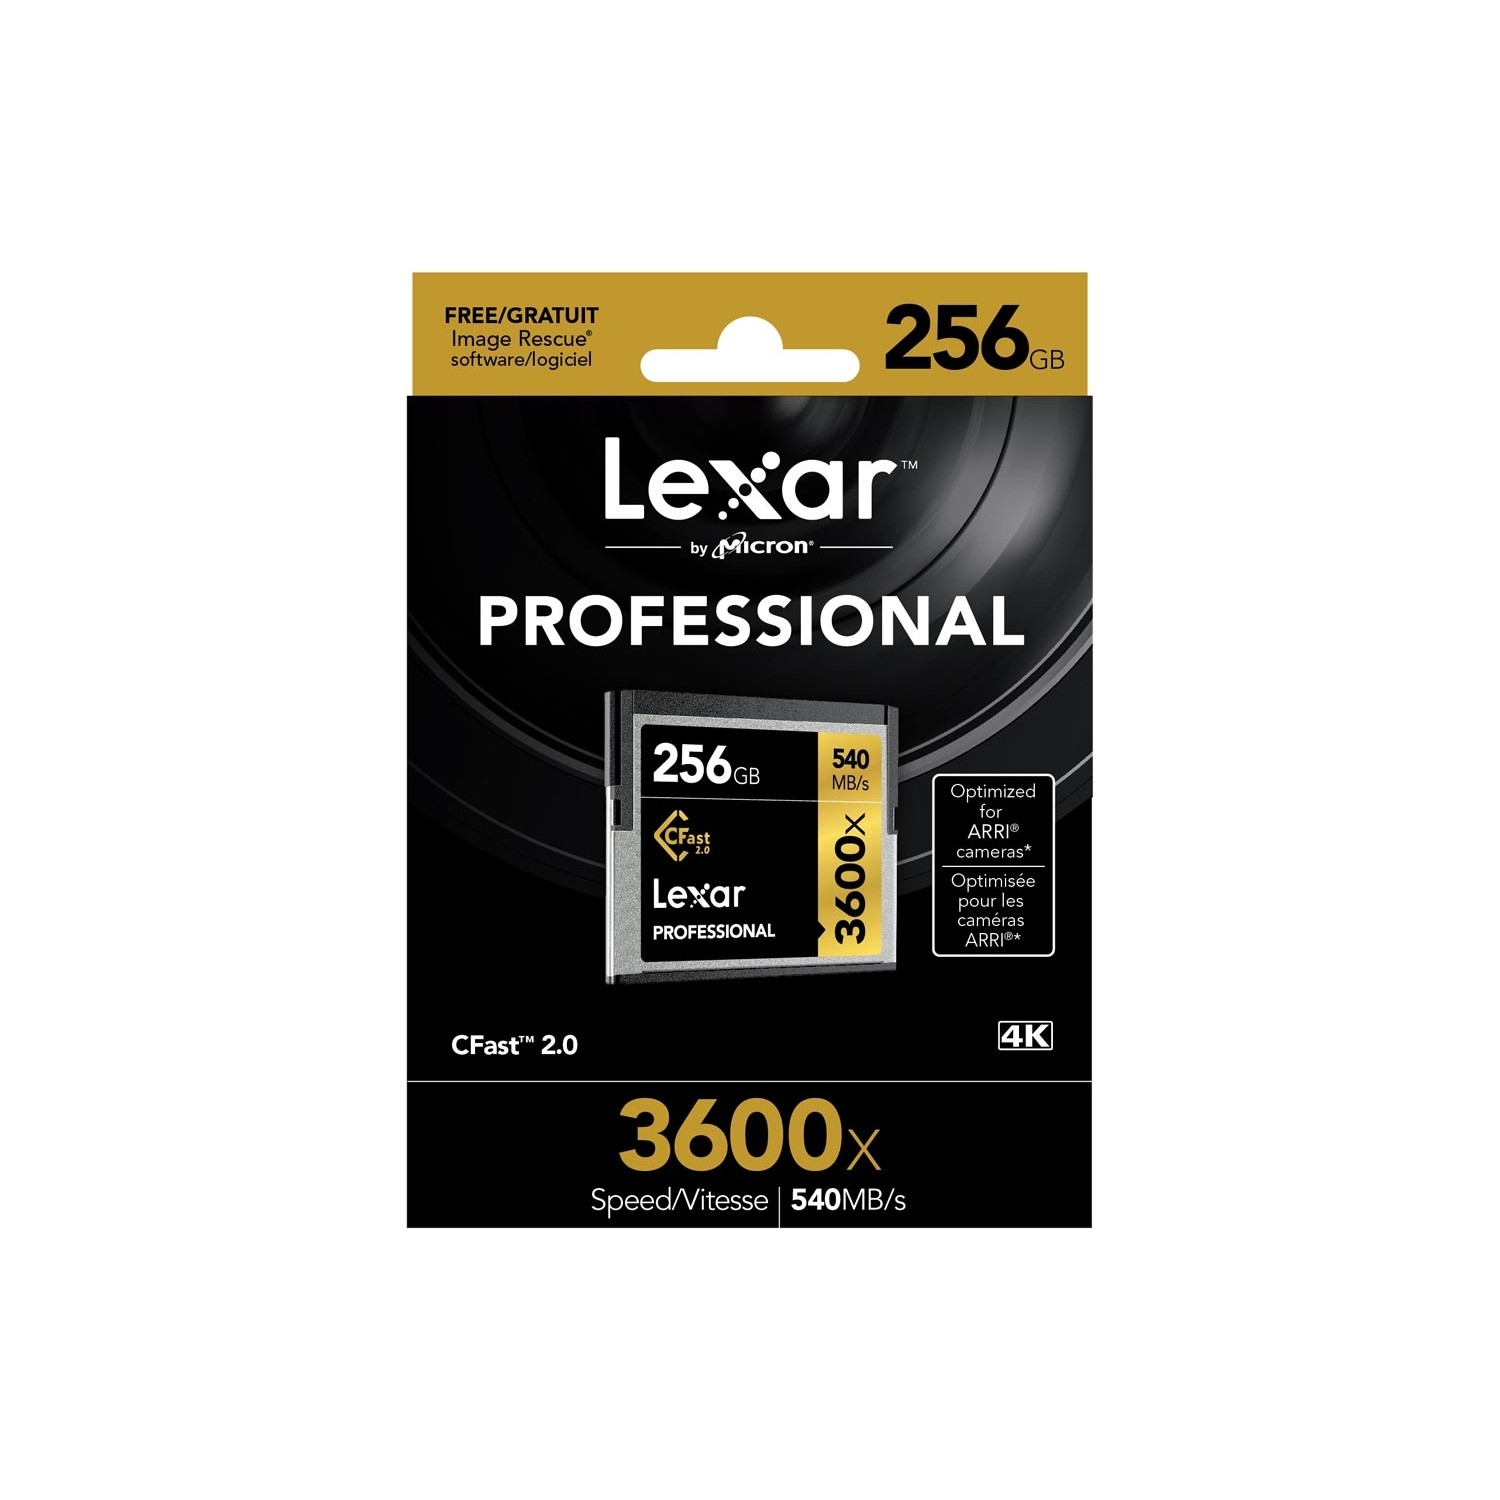 Lexar 256GB Professional 3600X 540 Mb/s Cfast 2.0 Hafıza Fiyatı